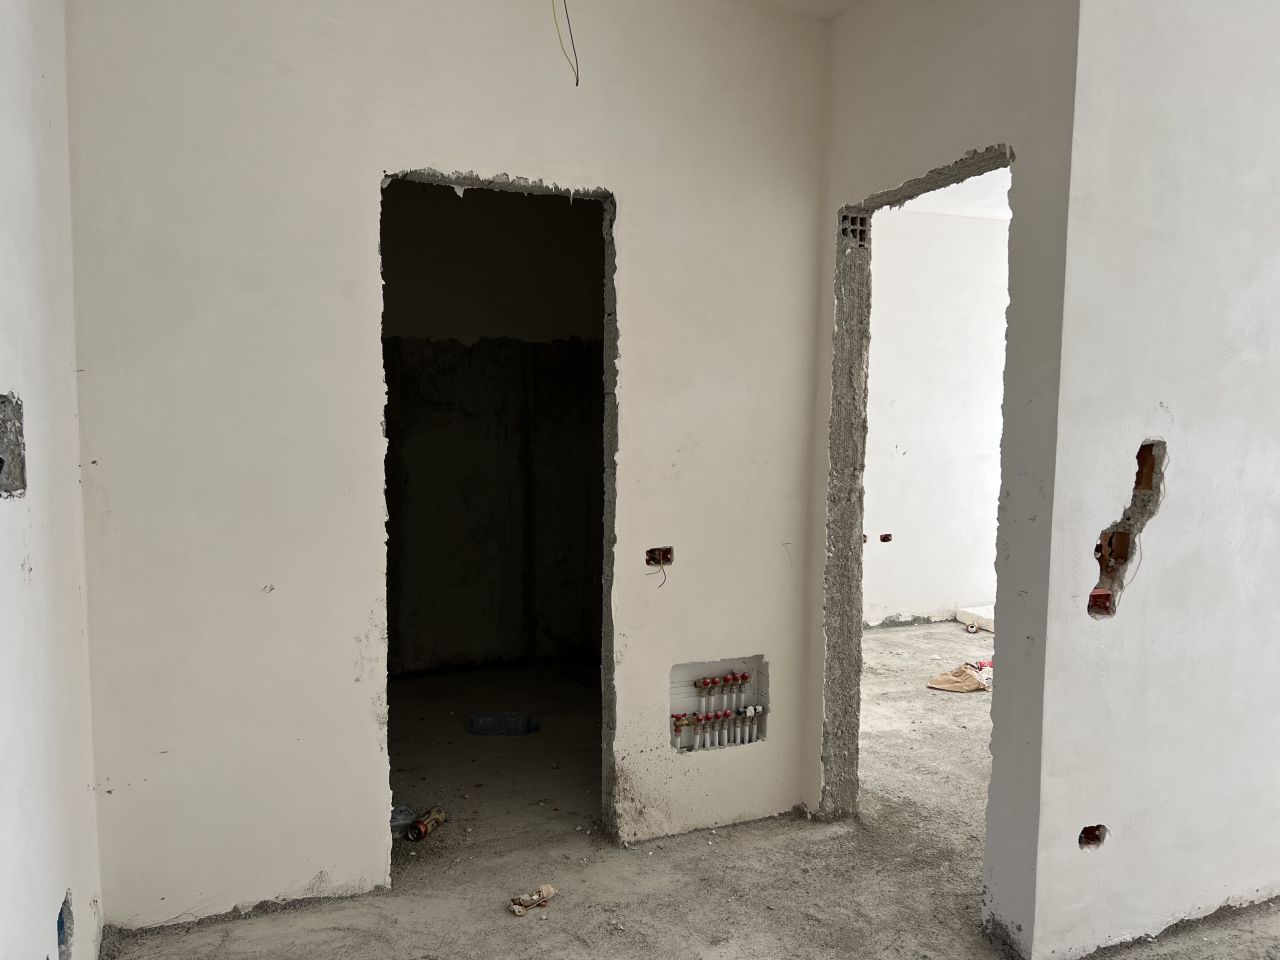 Wohnung Zum Verkauf In Golem Durres, Albanien, In Einem Neuen Gebäude Im Bau, Nahe Am Strand